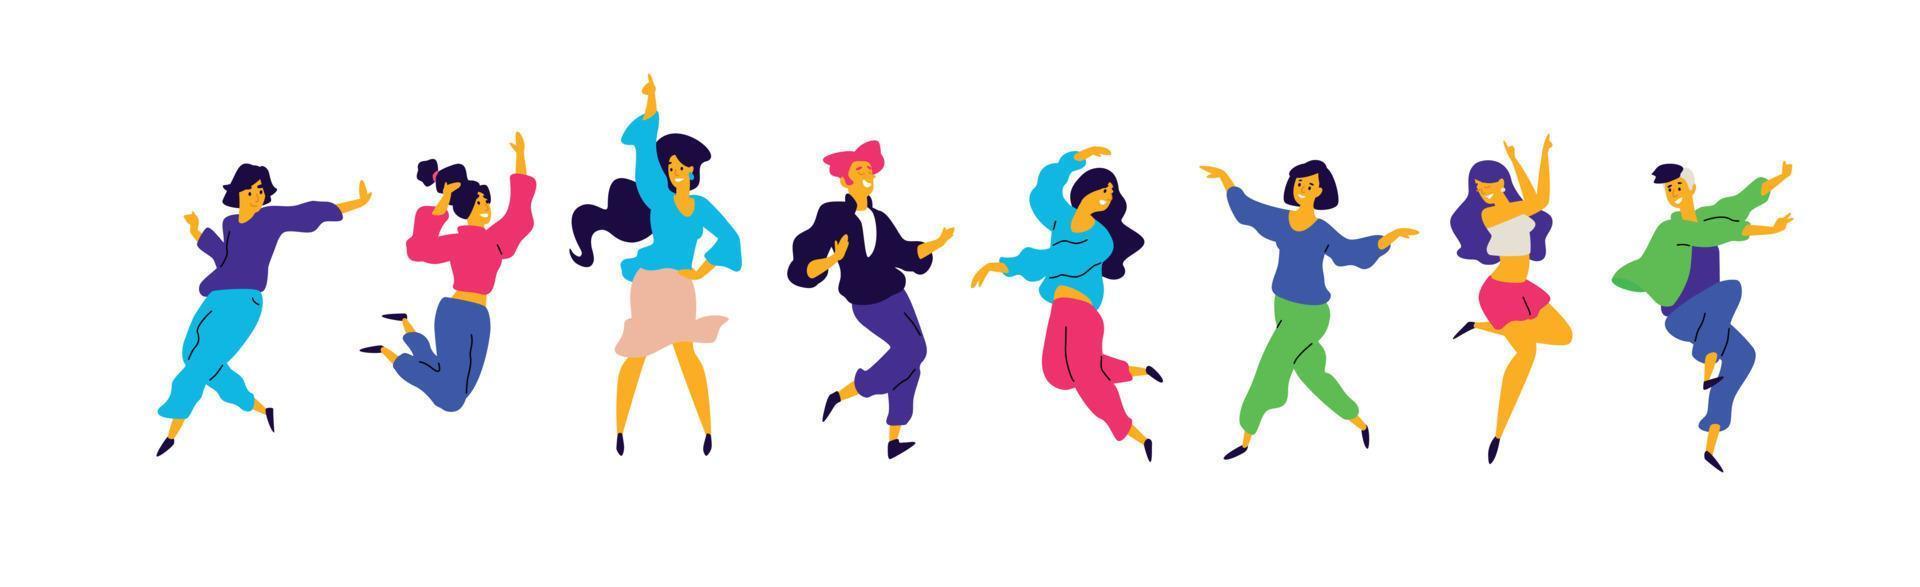 un grupo de chicos y chicas jóvenes felices están bailando. vector. ilustraciones de machos y hembras. estilo plano un grupo de adolescentes felices bailan y se divierten. vector